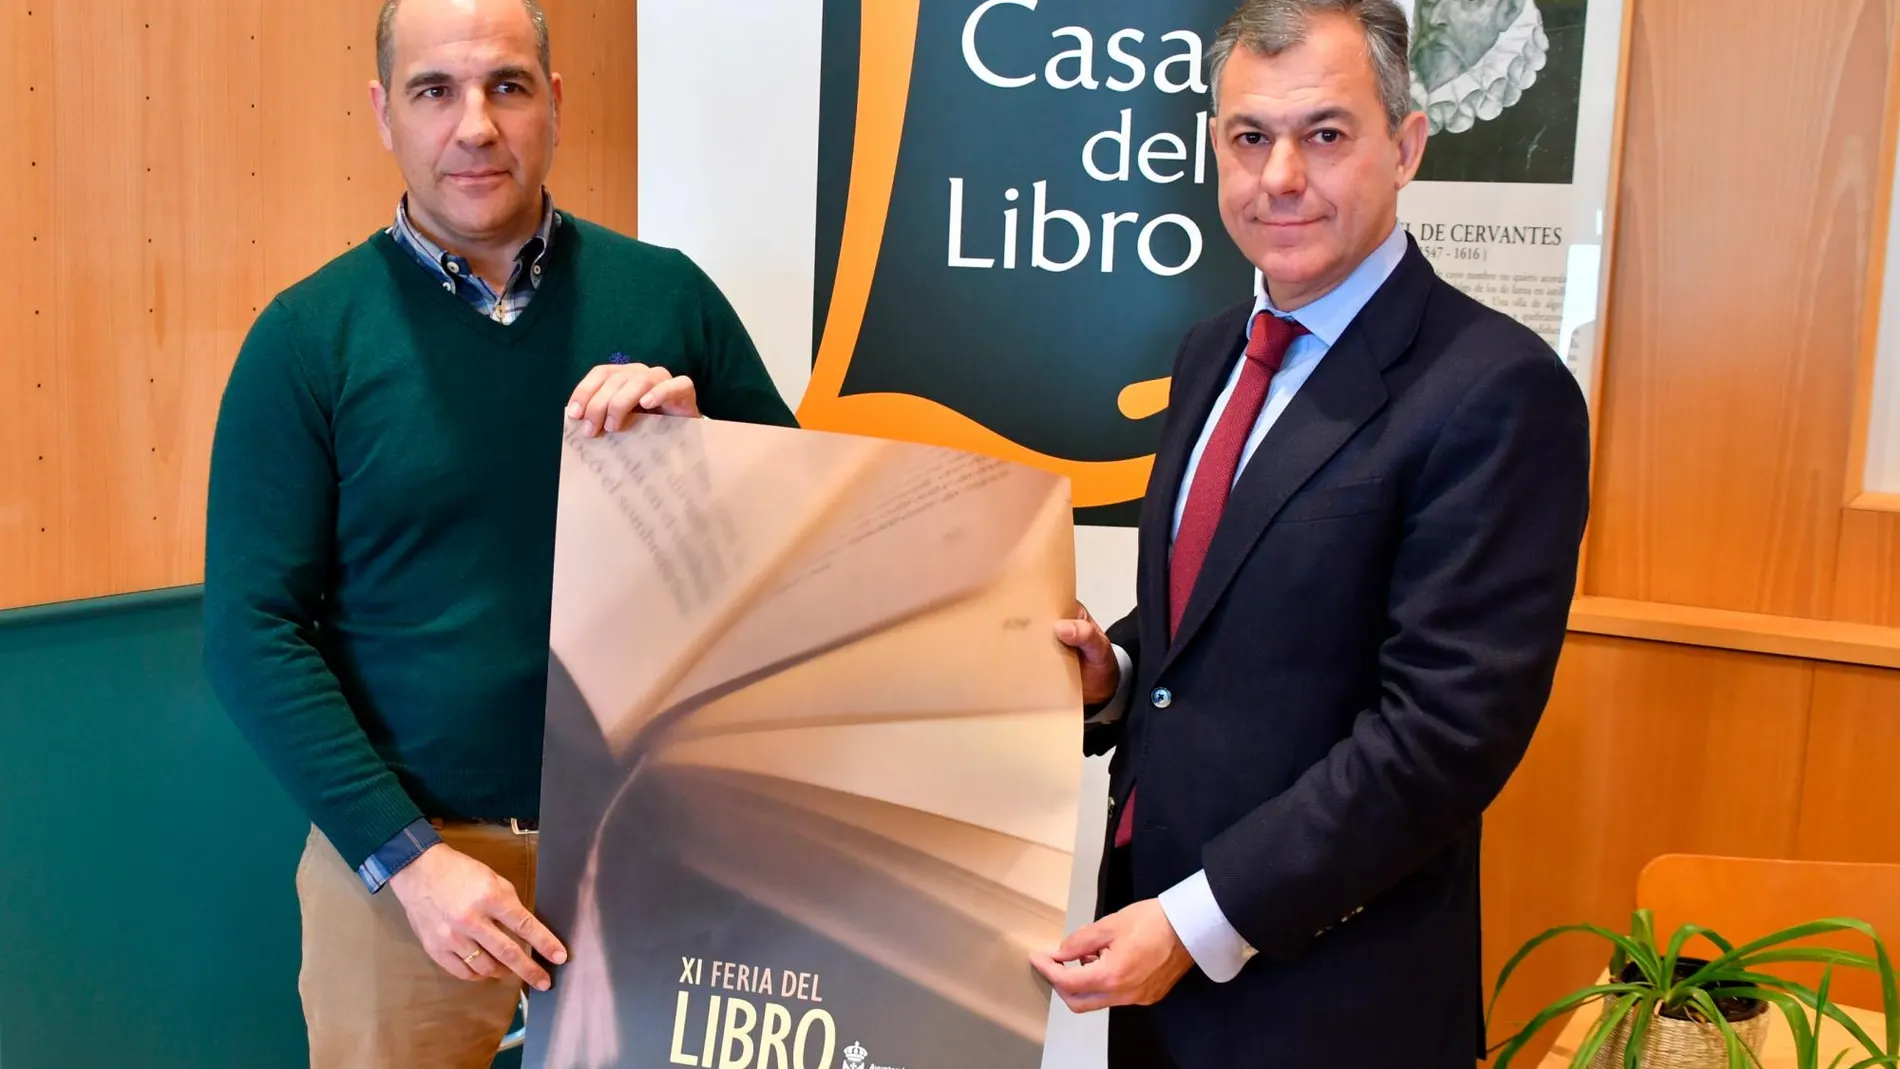 El alcalde de Tomares, José Luis Sanz, y el director de La Casa del Libro, Rafael García Organvídez / Foto: La Razón